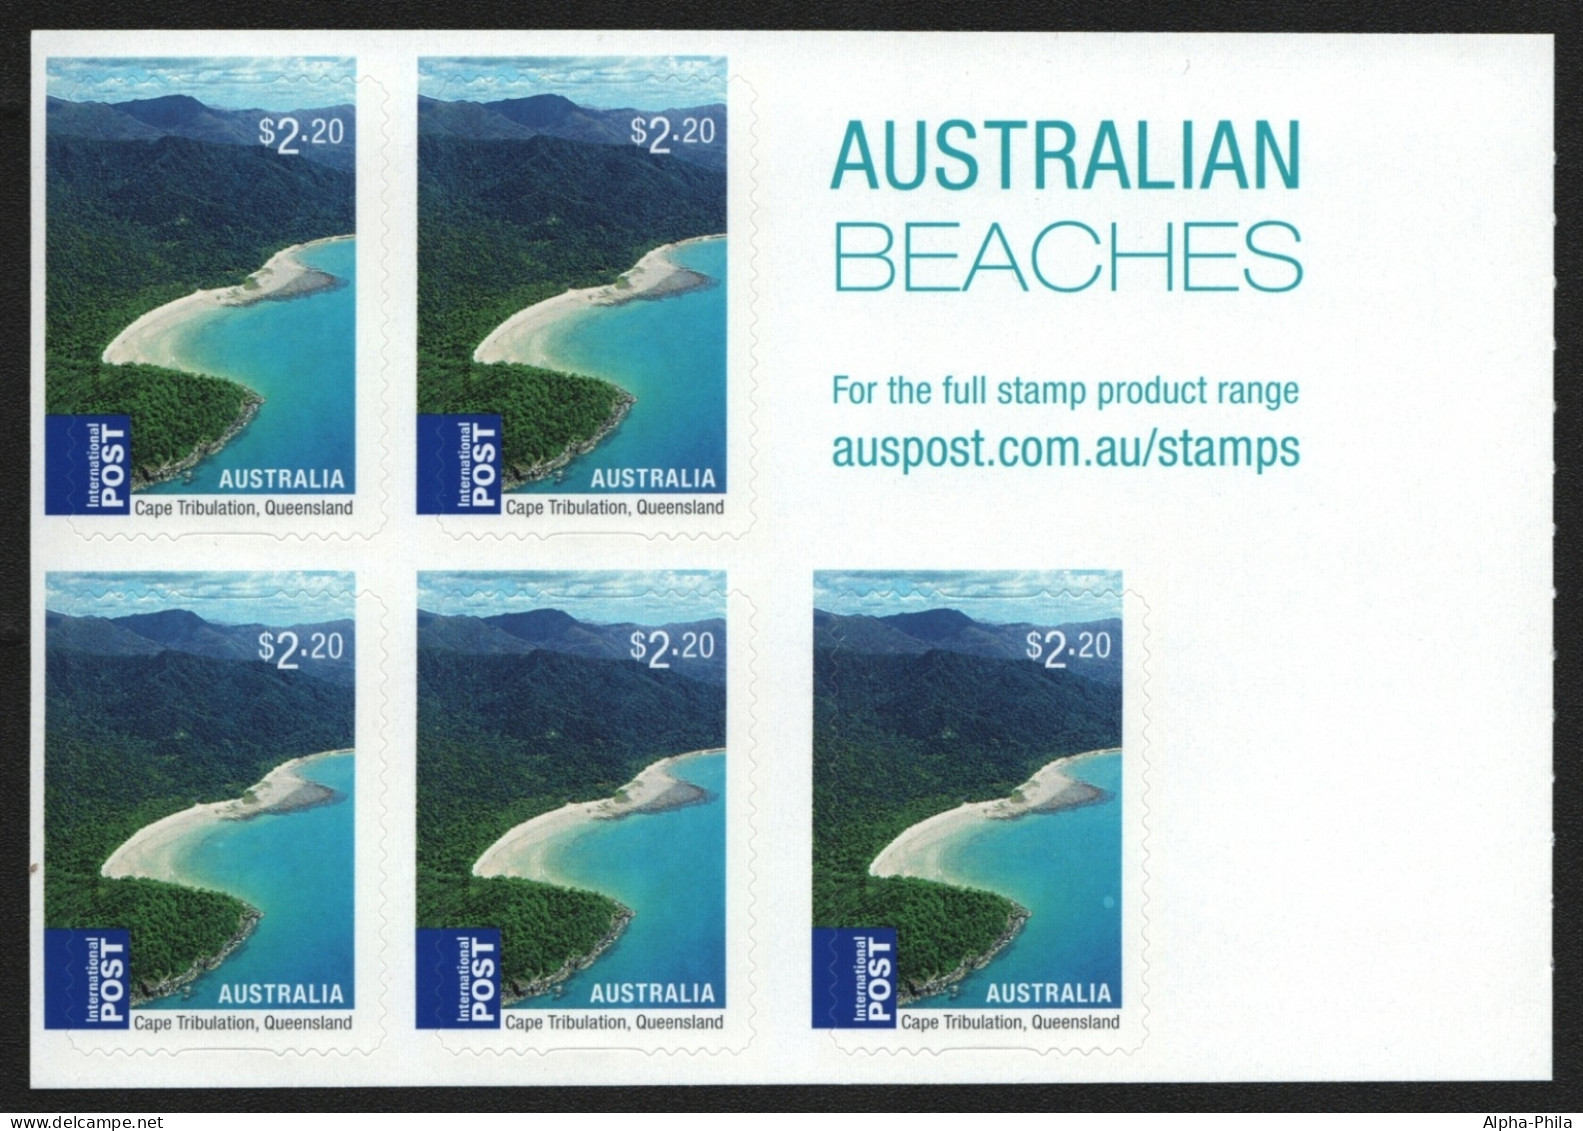 Australien 2010 - Mi-Nr. 3409 BA ** - MNH - Folienblatt - Strände / Beaches - Mint Stamps